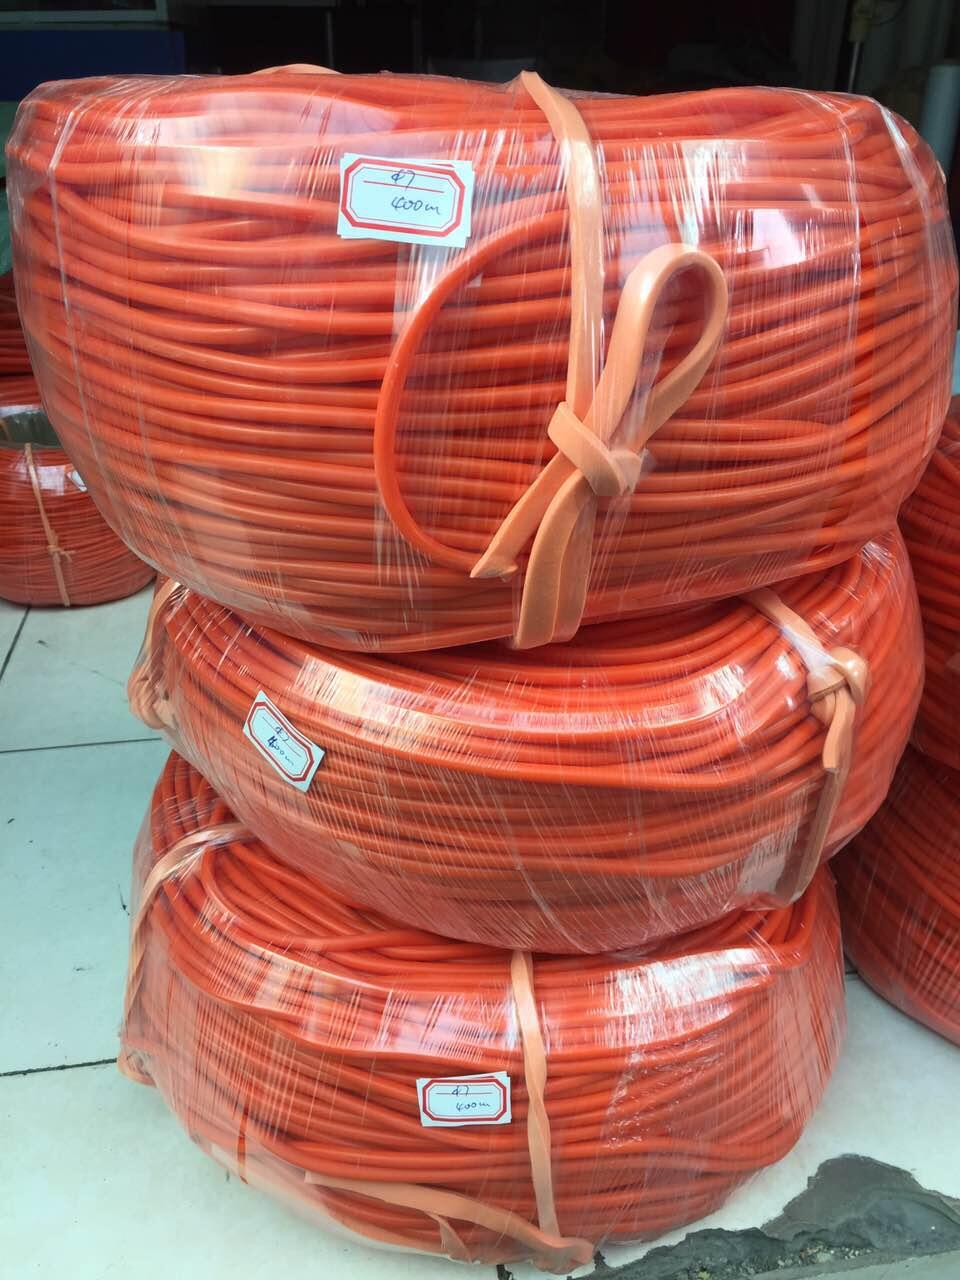 silicone rubber cord